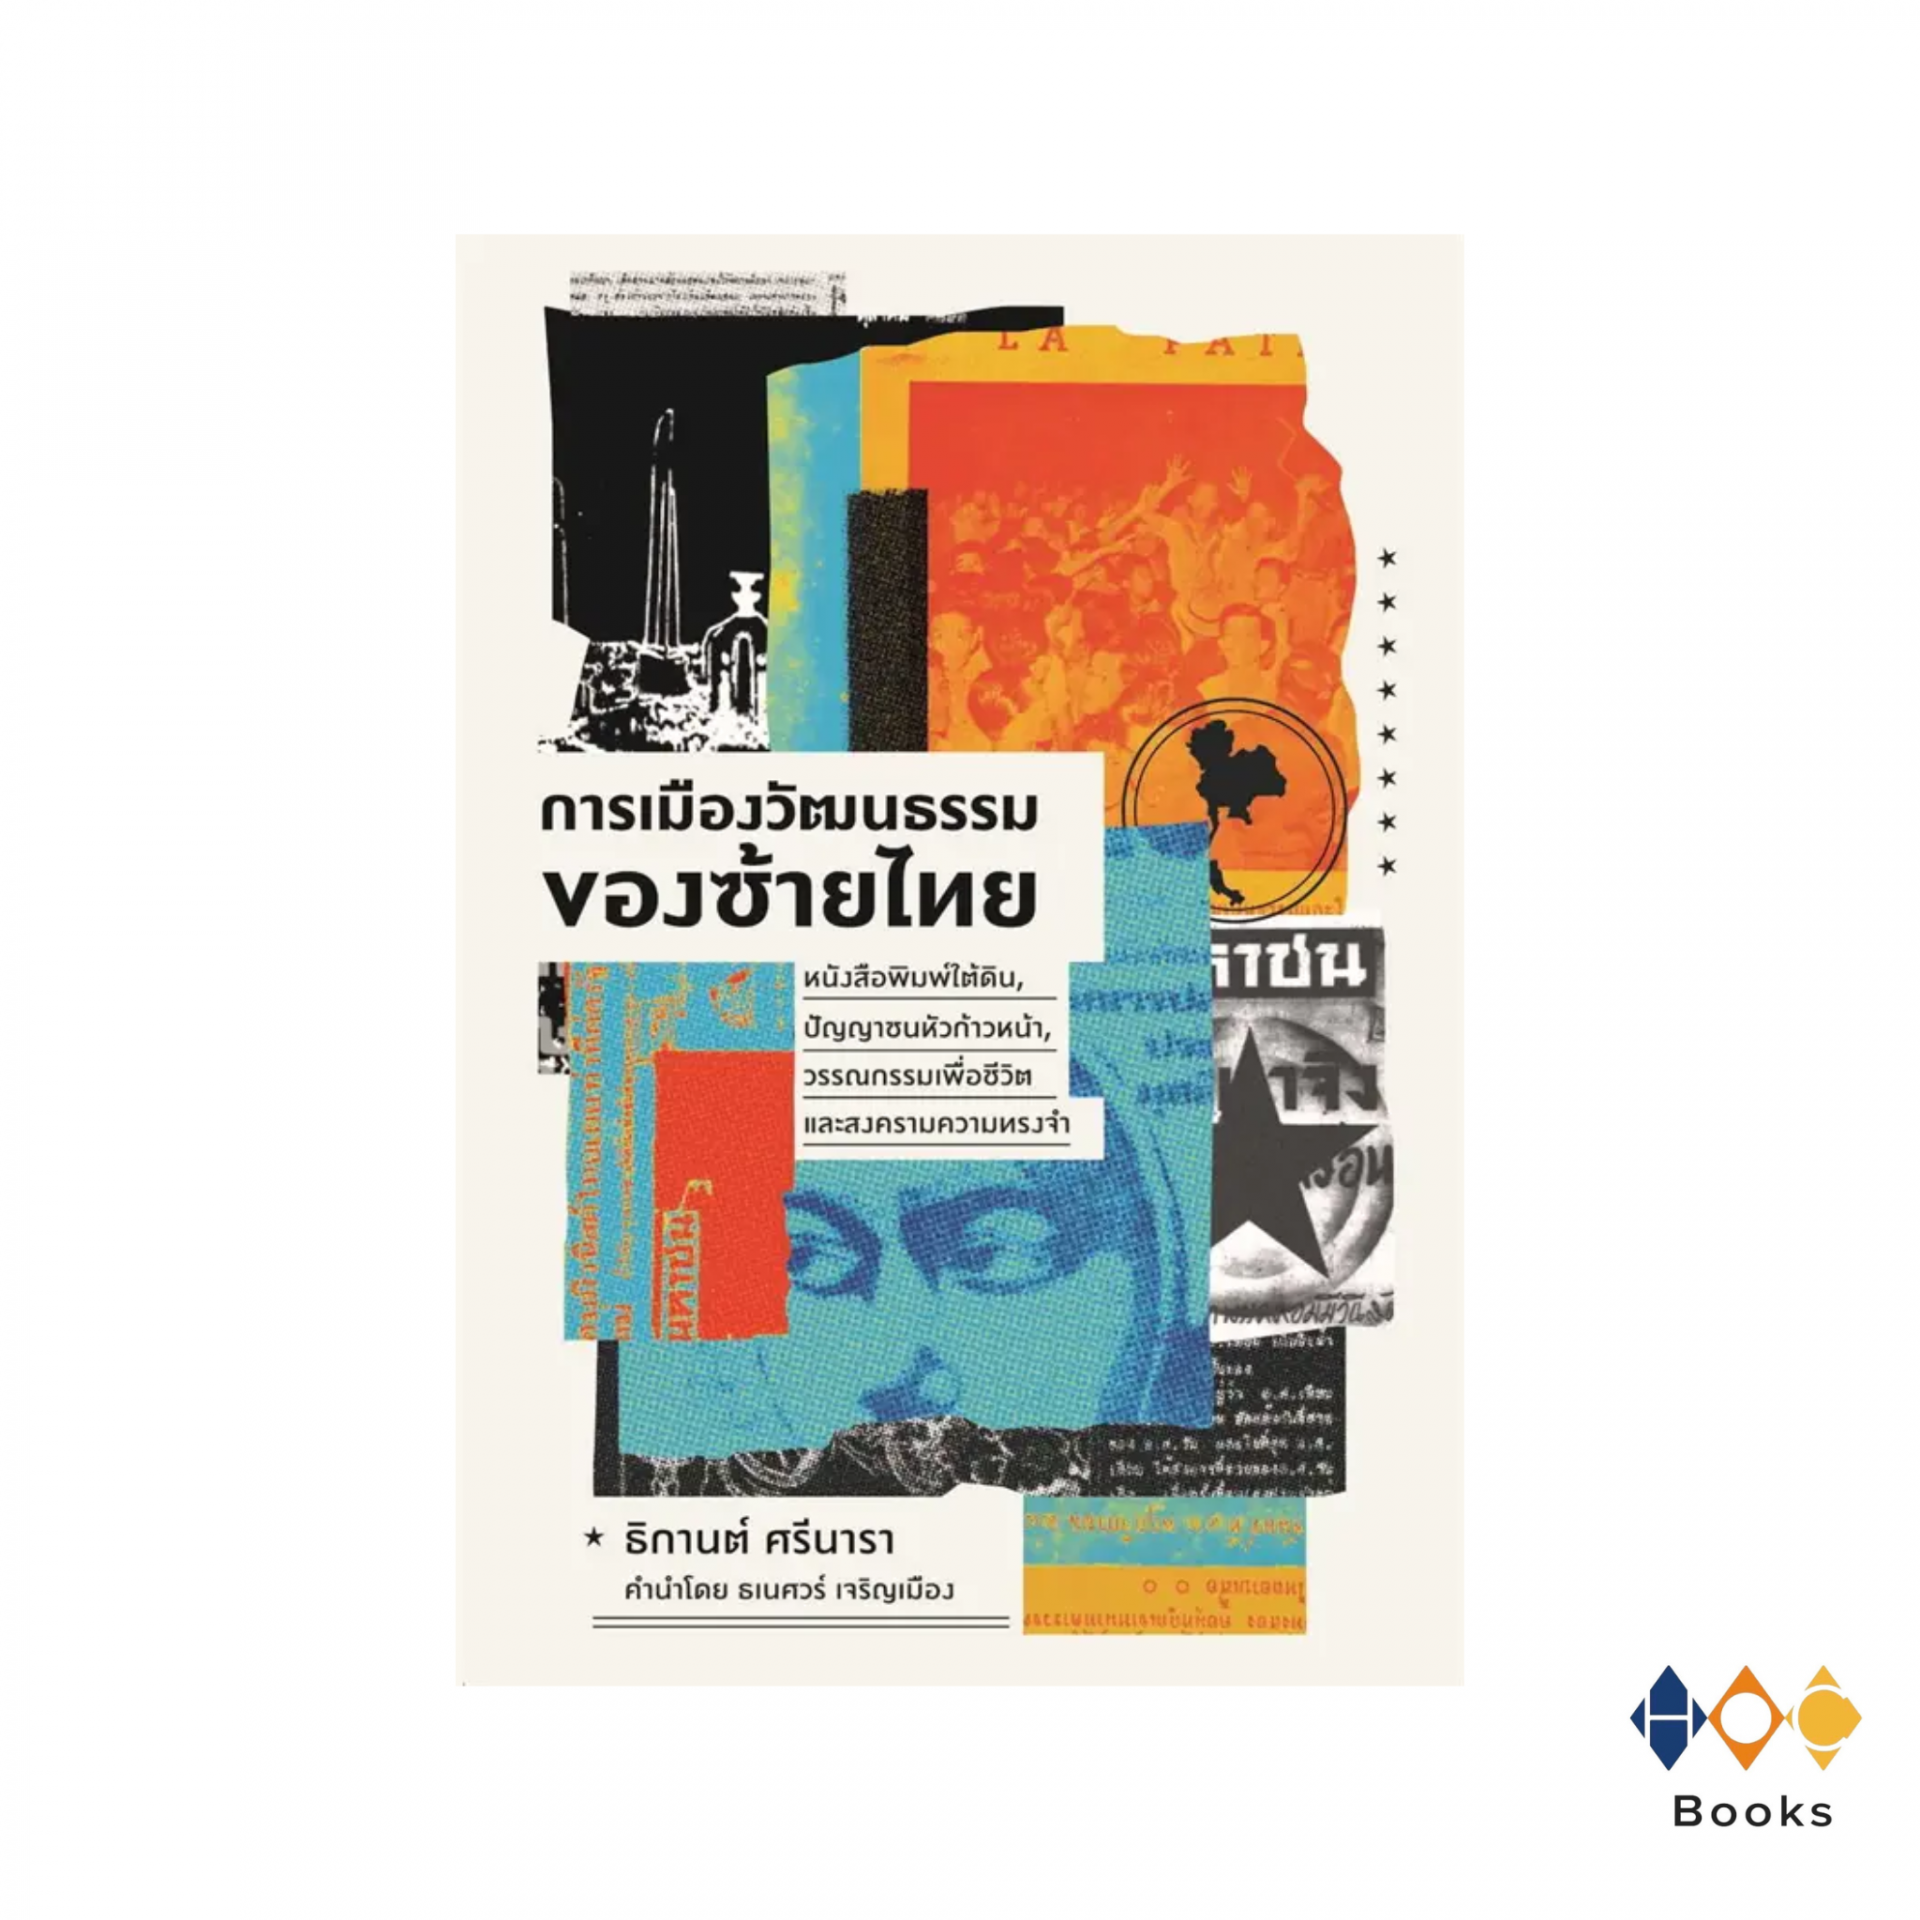 หนังสือ การเมืองวัฒนธรรมของซ้ายไทย : หนังสือพิมพ์ใต้ดิน, ปัญญาชนหัวก้าวหน้า, วรรณกรรมเพื่อชีวิต และสงครามความทรงจำ